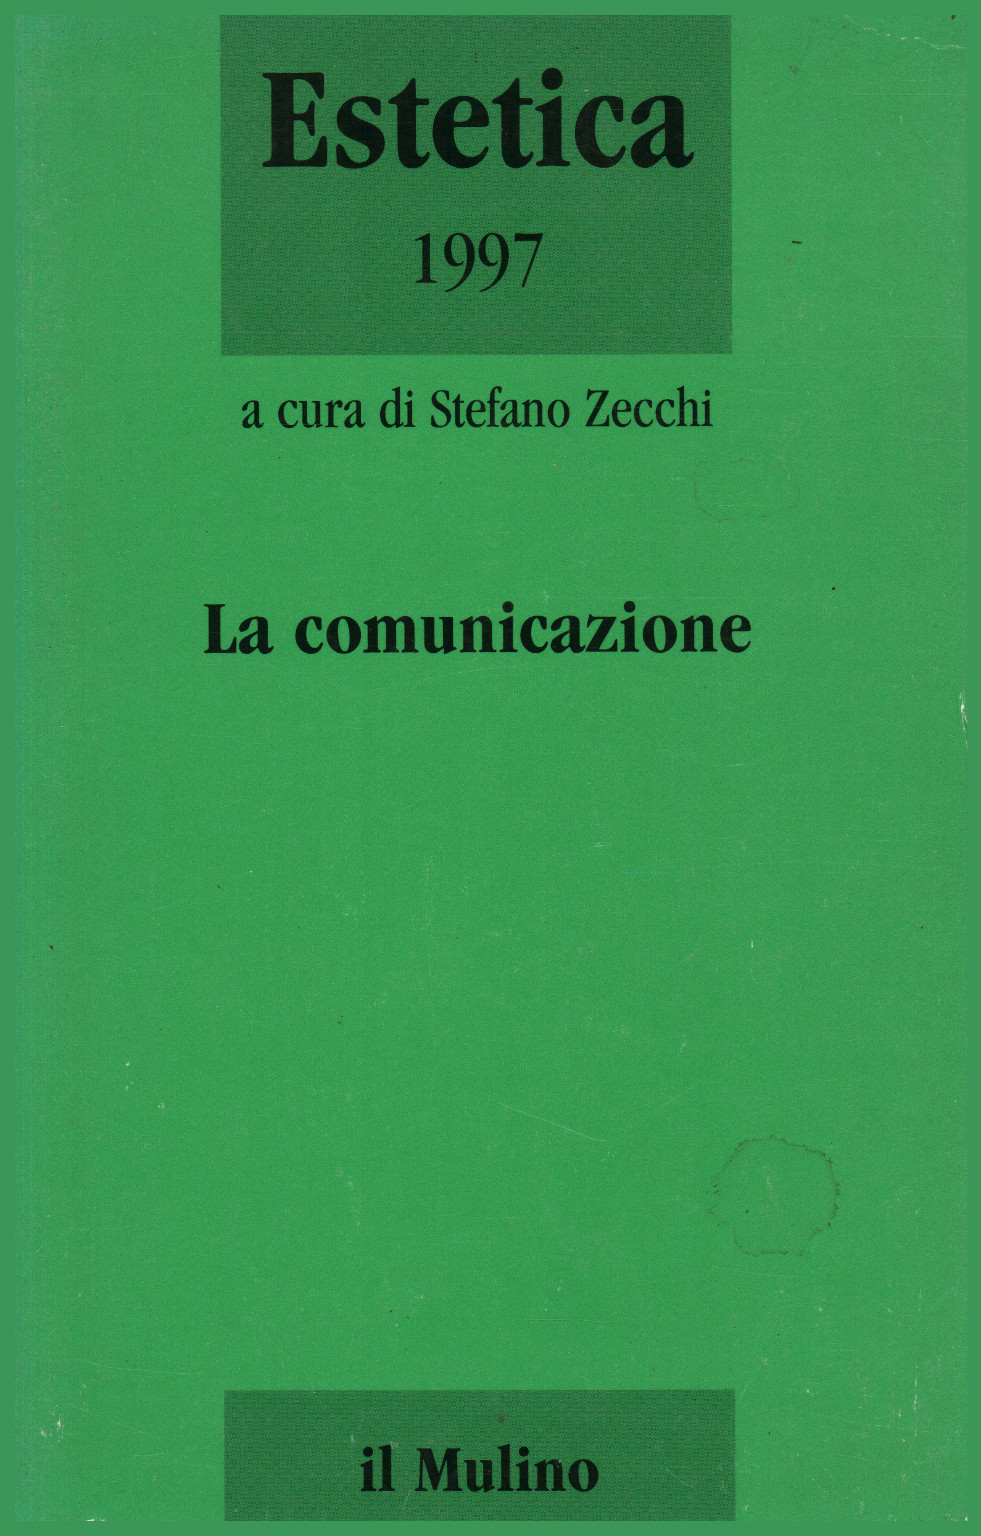 Estetica 1997. La comunicazione, s.a.